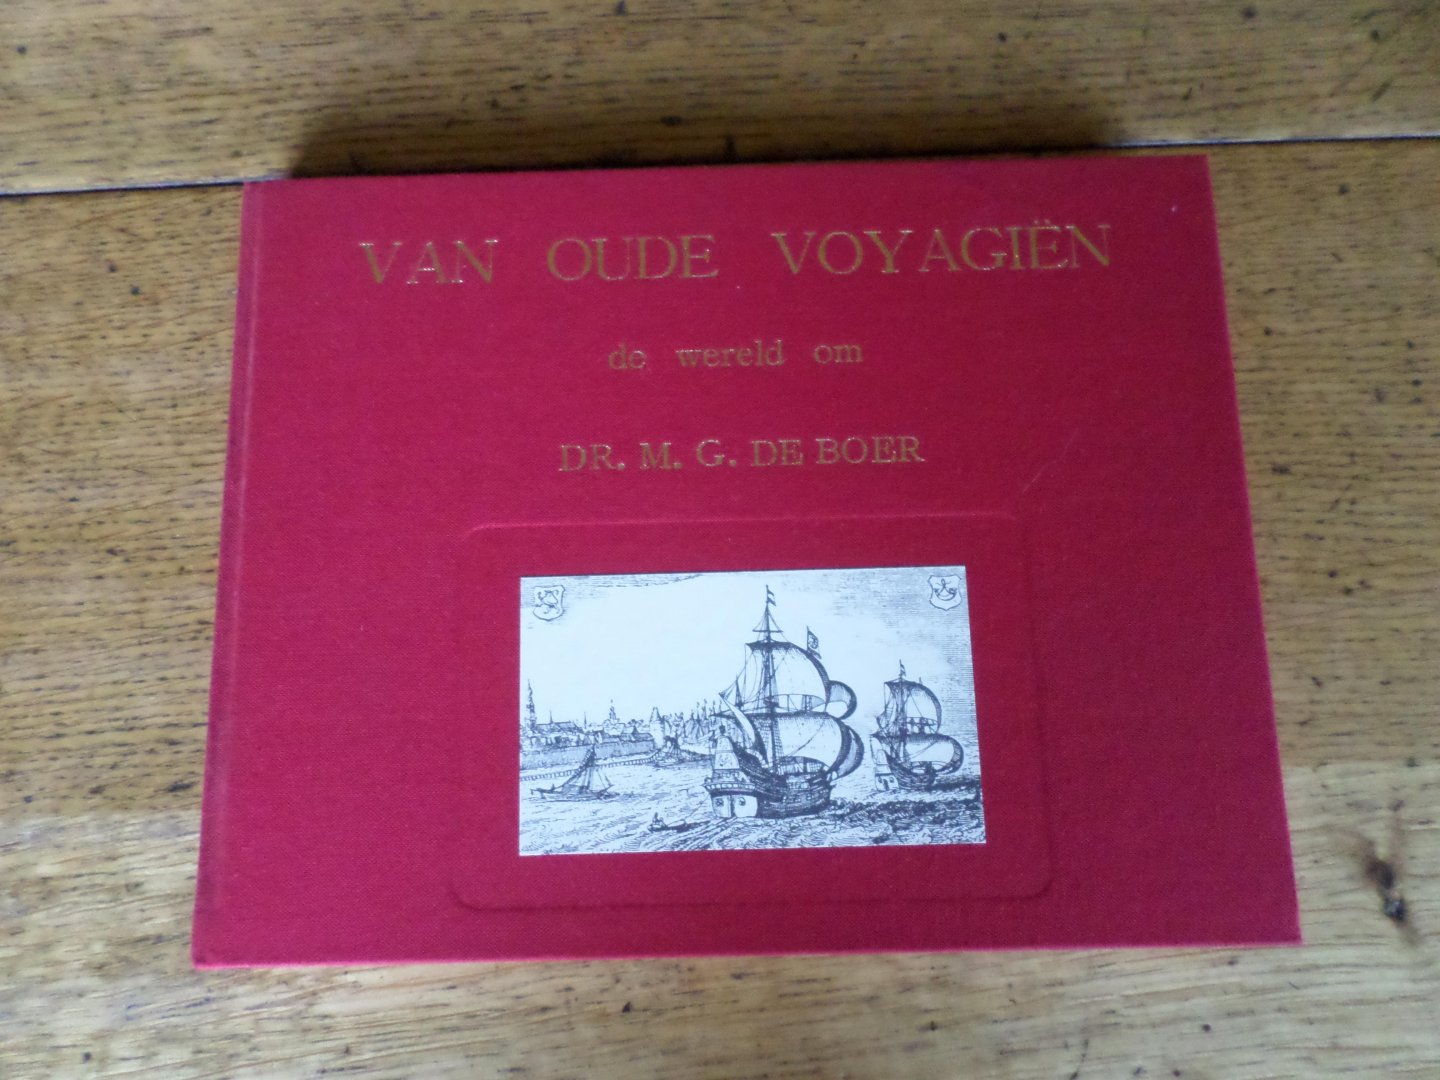 Boer, dr. M.G. de - Van oude voyagiën deel 3 met Tasman en Bontekoe